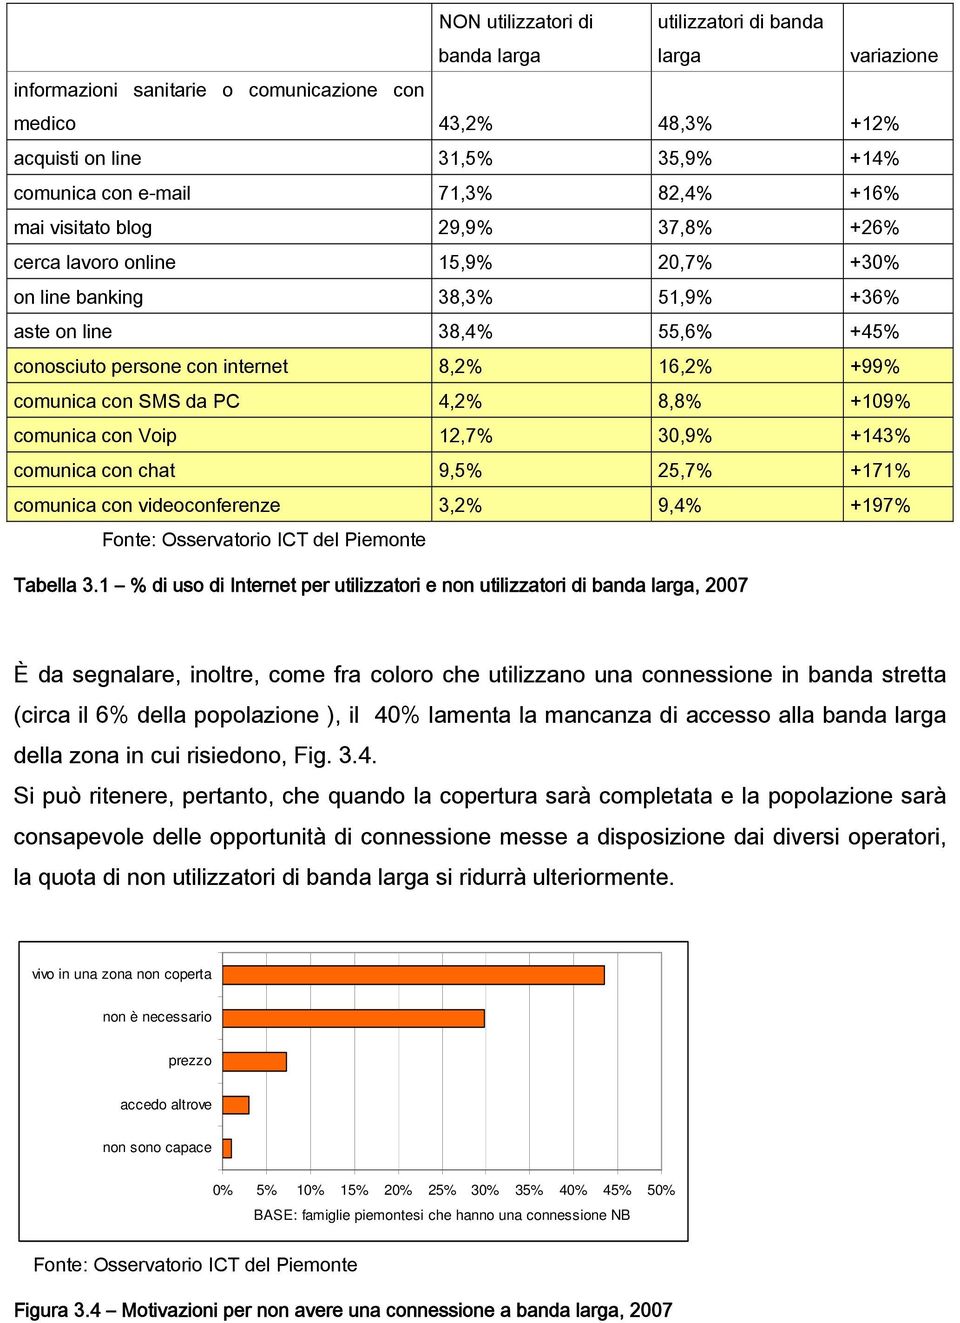 comunica con SMS da PC 4,2% 8,8% +109% comunica con Voip 12,7% 30,9% +143% comunica con chat 9,5% 25,7% +171% comunica con videoconferenze 3,2% 9,4% +197% Fonte: Osservatorio ICT del Piemonte Tabella